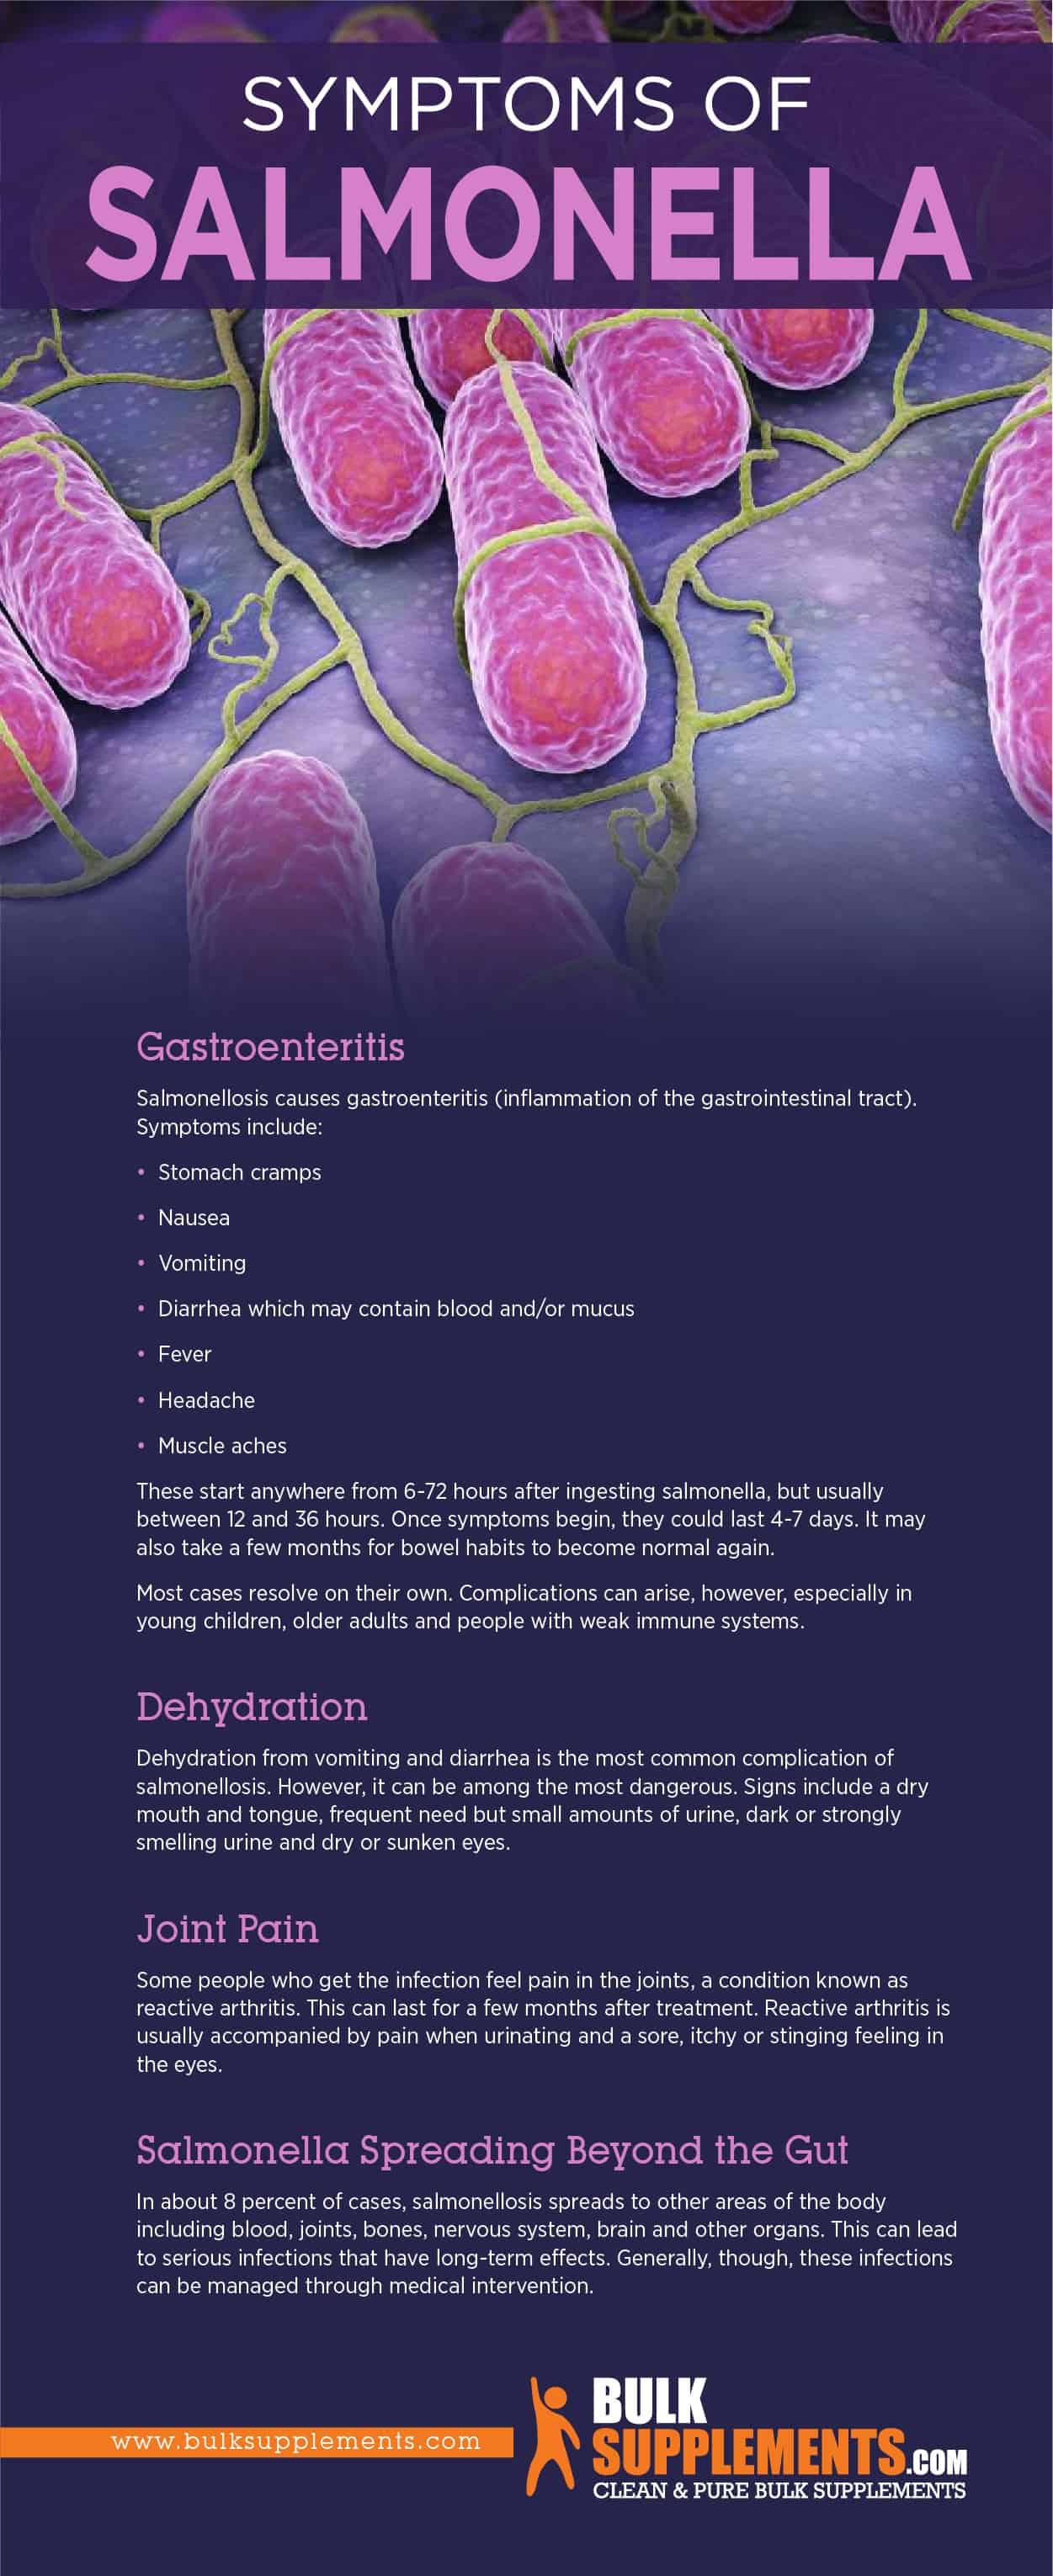 Symptoms of Salmonella